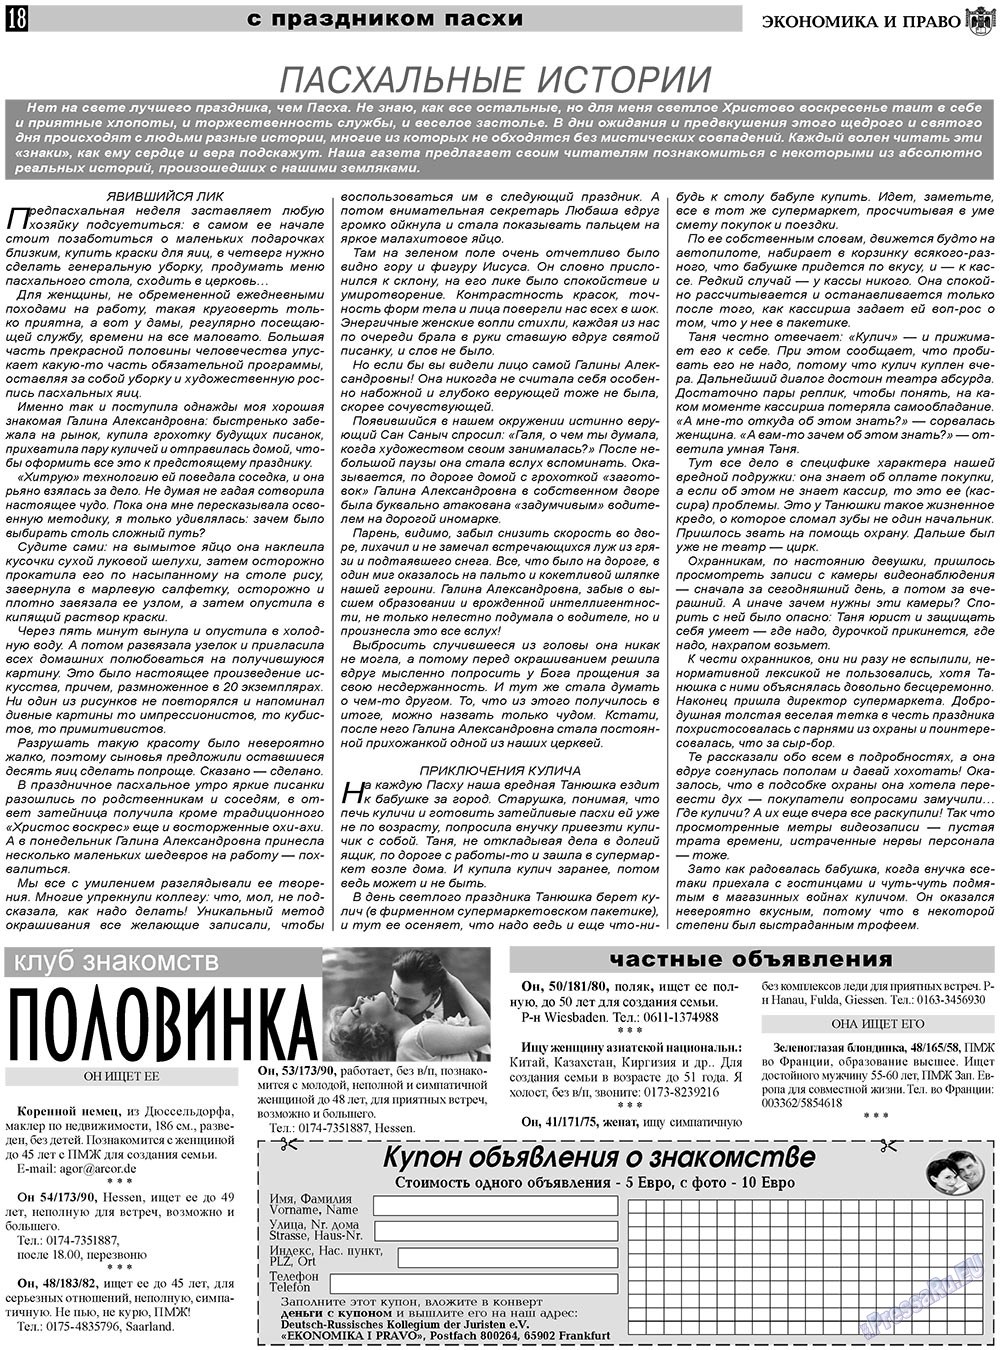 Экономика и право, газета. 2011 №4 стр.18